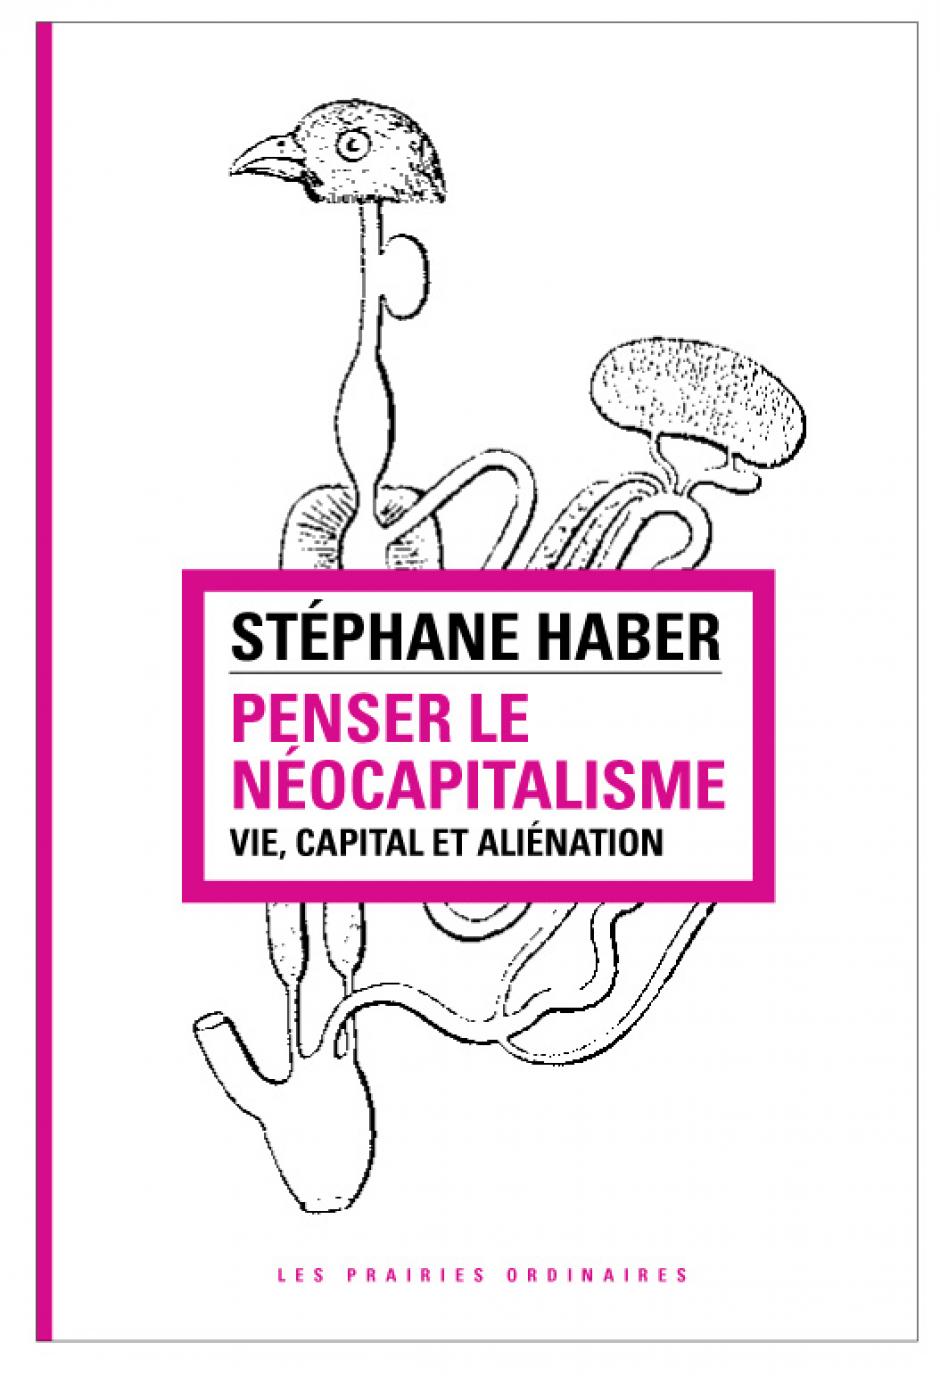 Le capitalisme : entre philosophie et sciences historico-sociales, Stéphane Haber*